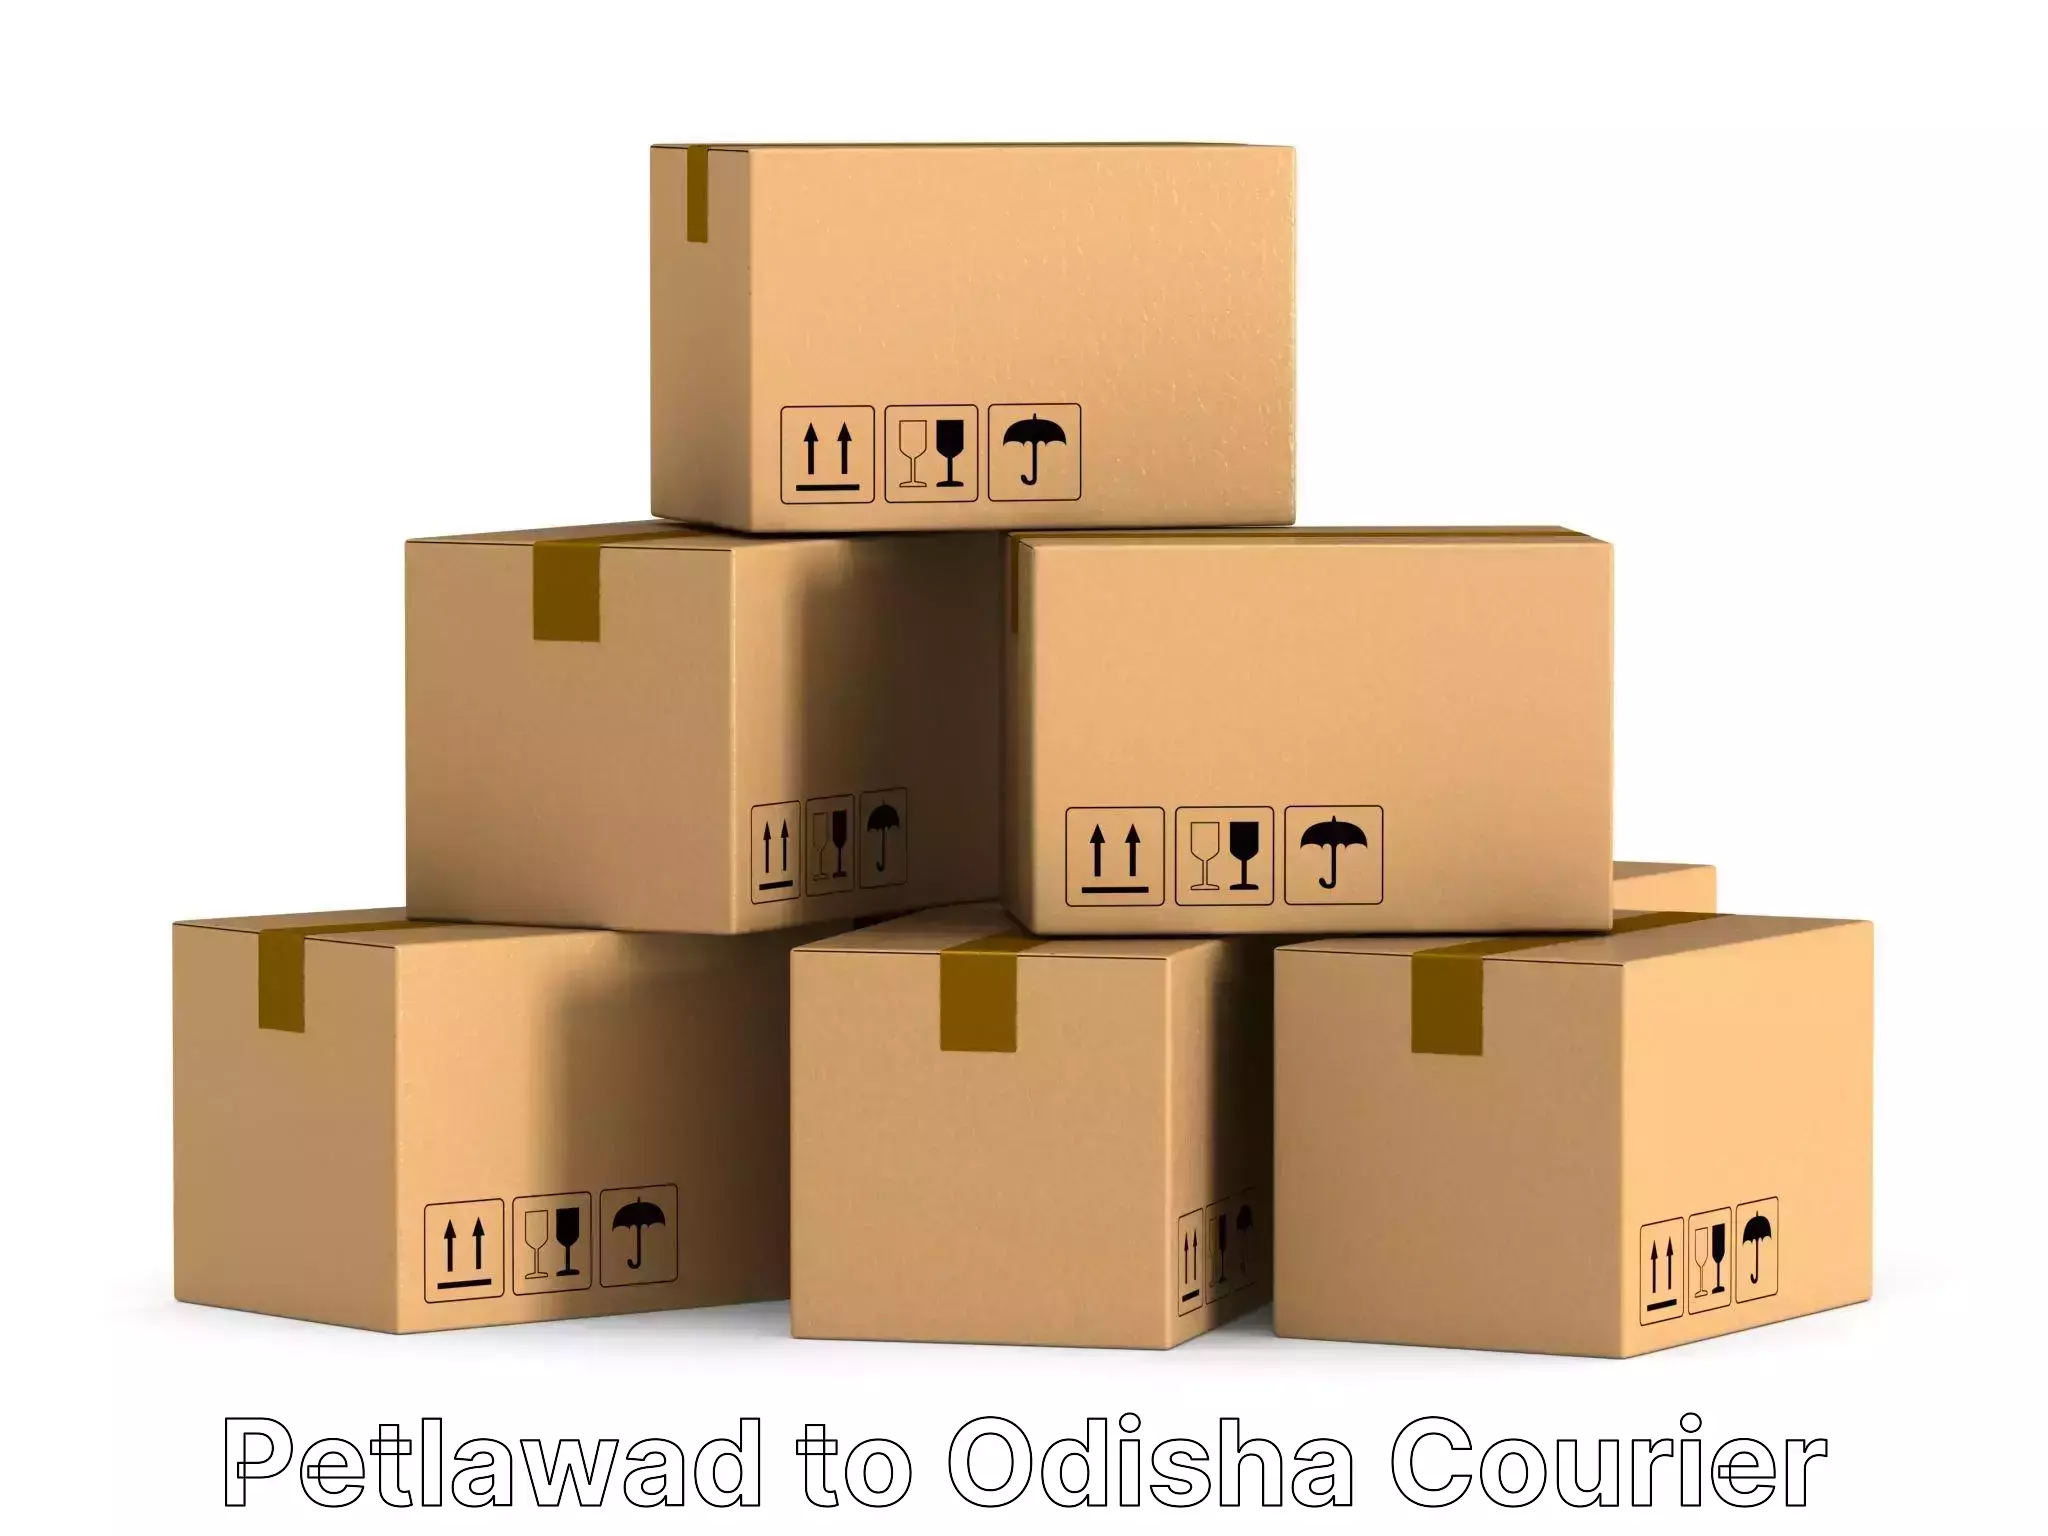 Furniture moving experts Petlawad to Bhubaneswar